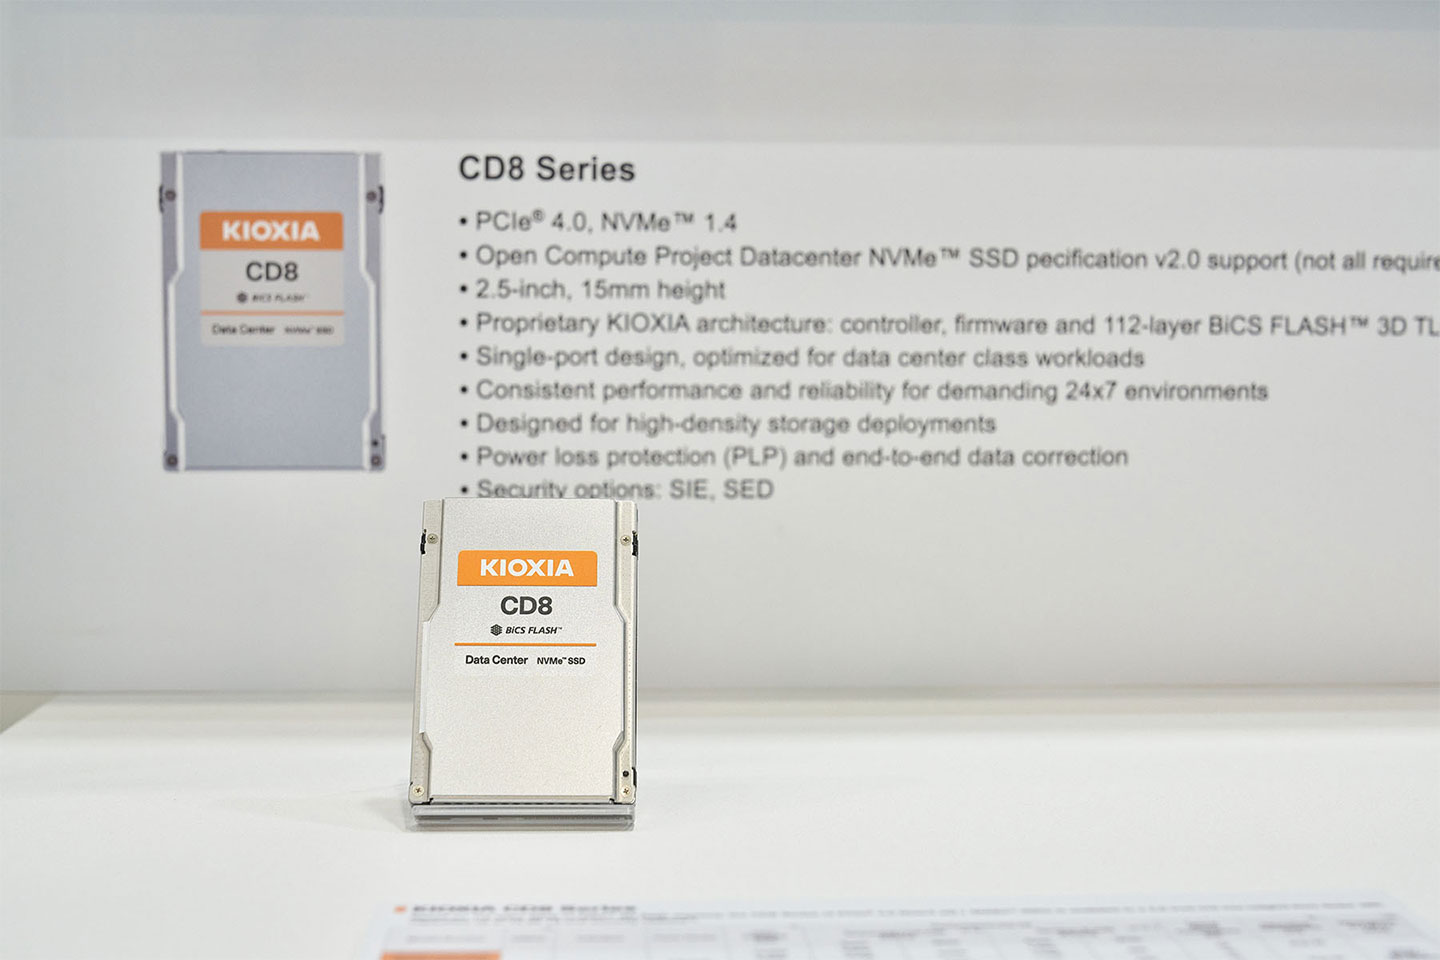 鎧俠的資料心級產品 CD8 系列，為 PCIe 4.0 規格產品。